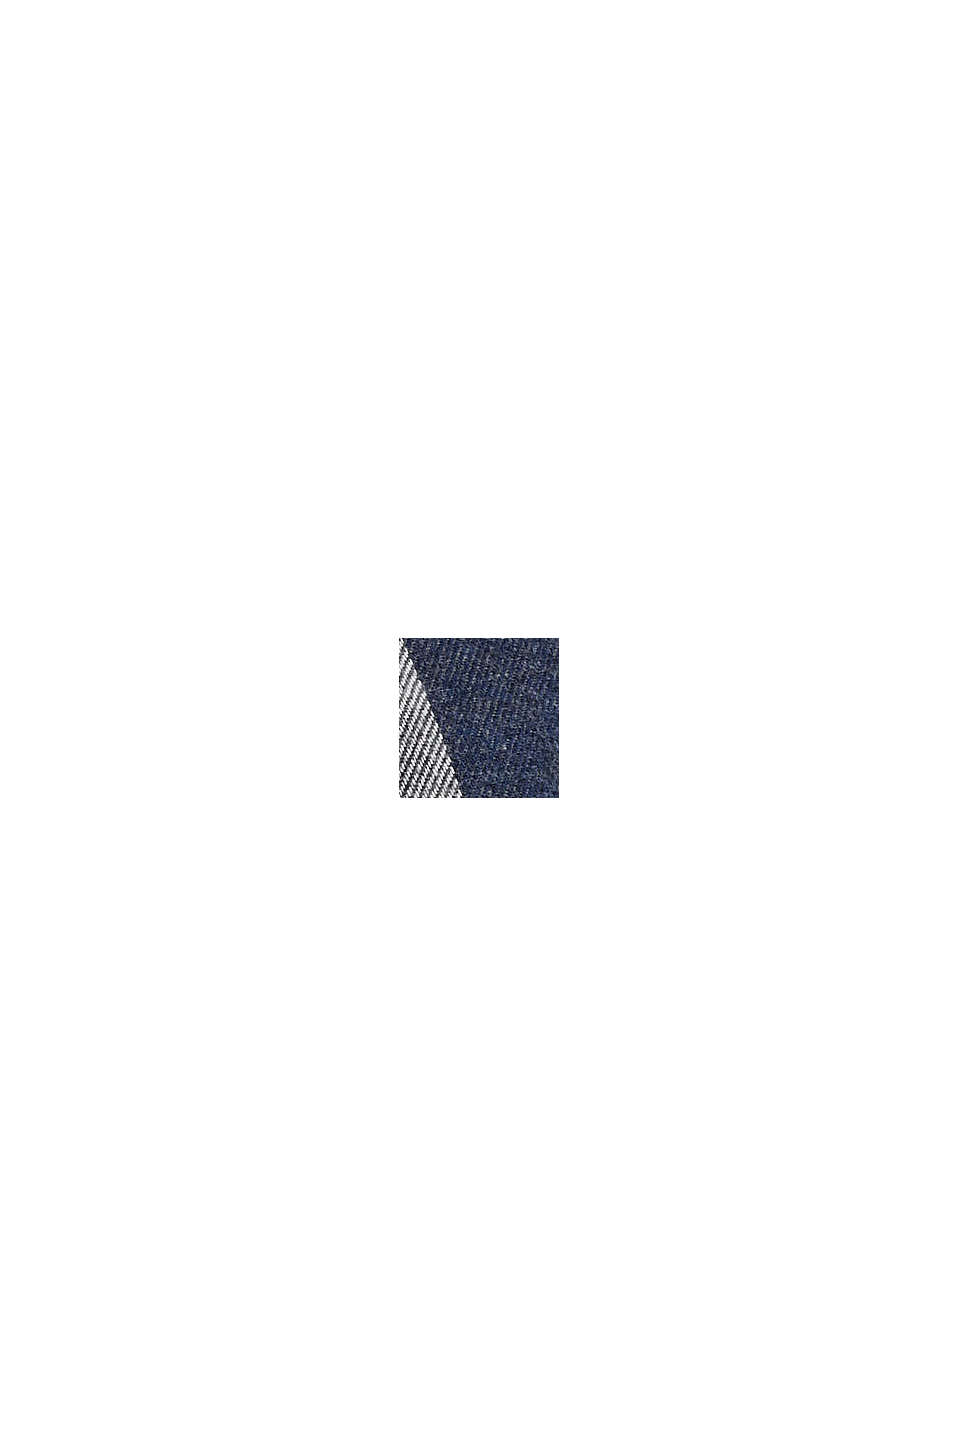 Flanelowa koszula w kratkę z bawełny, DARK BLUE, swatch